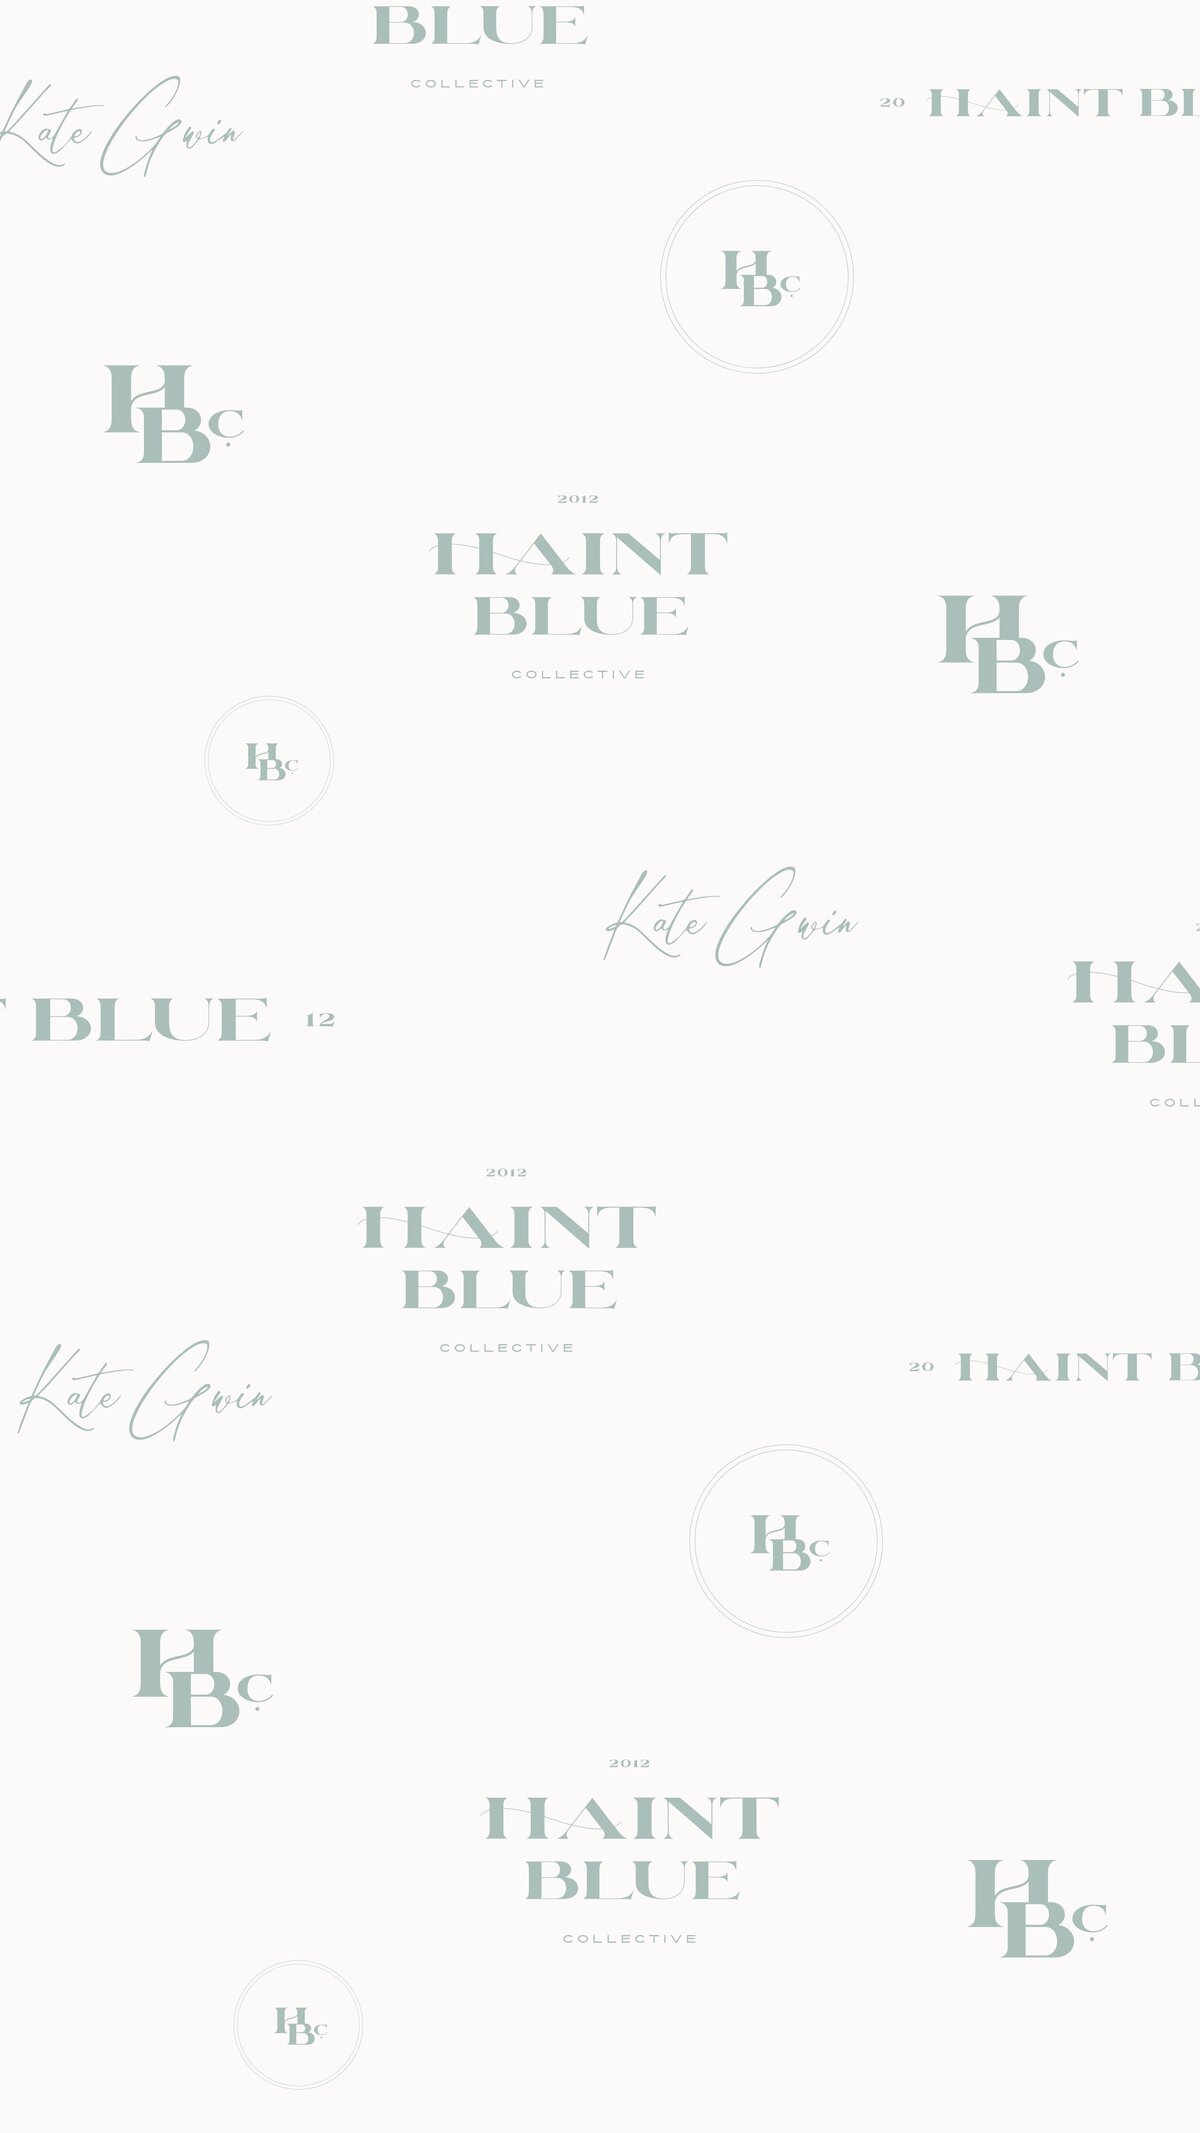 Foil & Ink_ Haint Blue branding and website design (10)